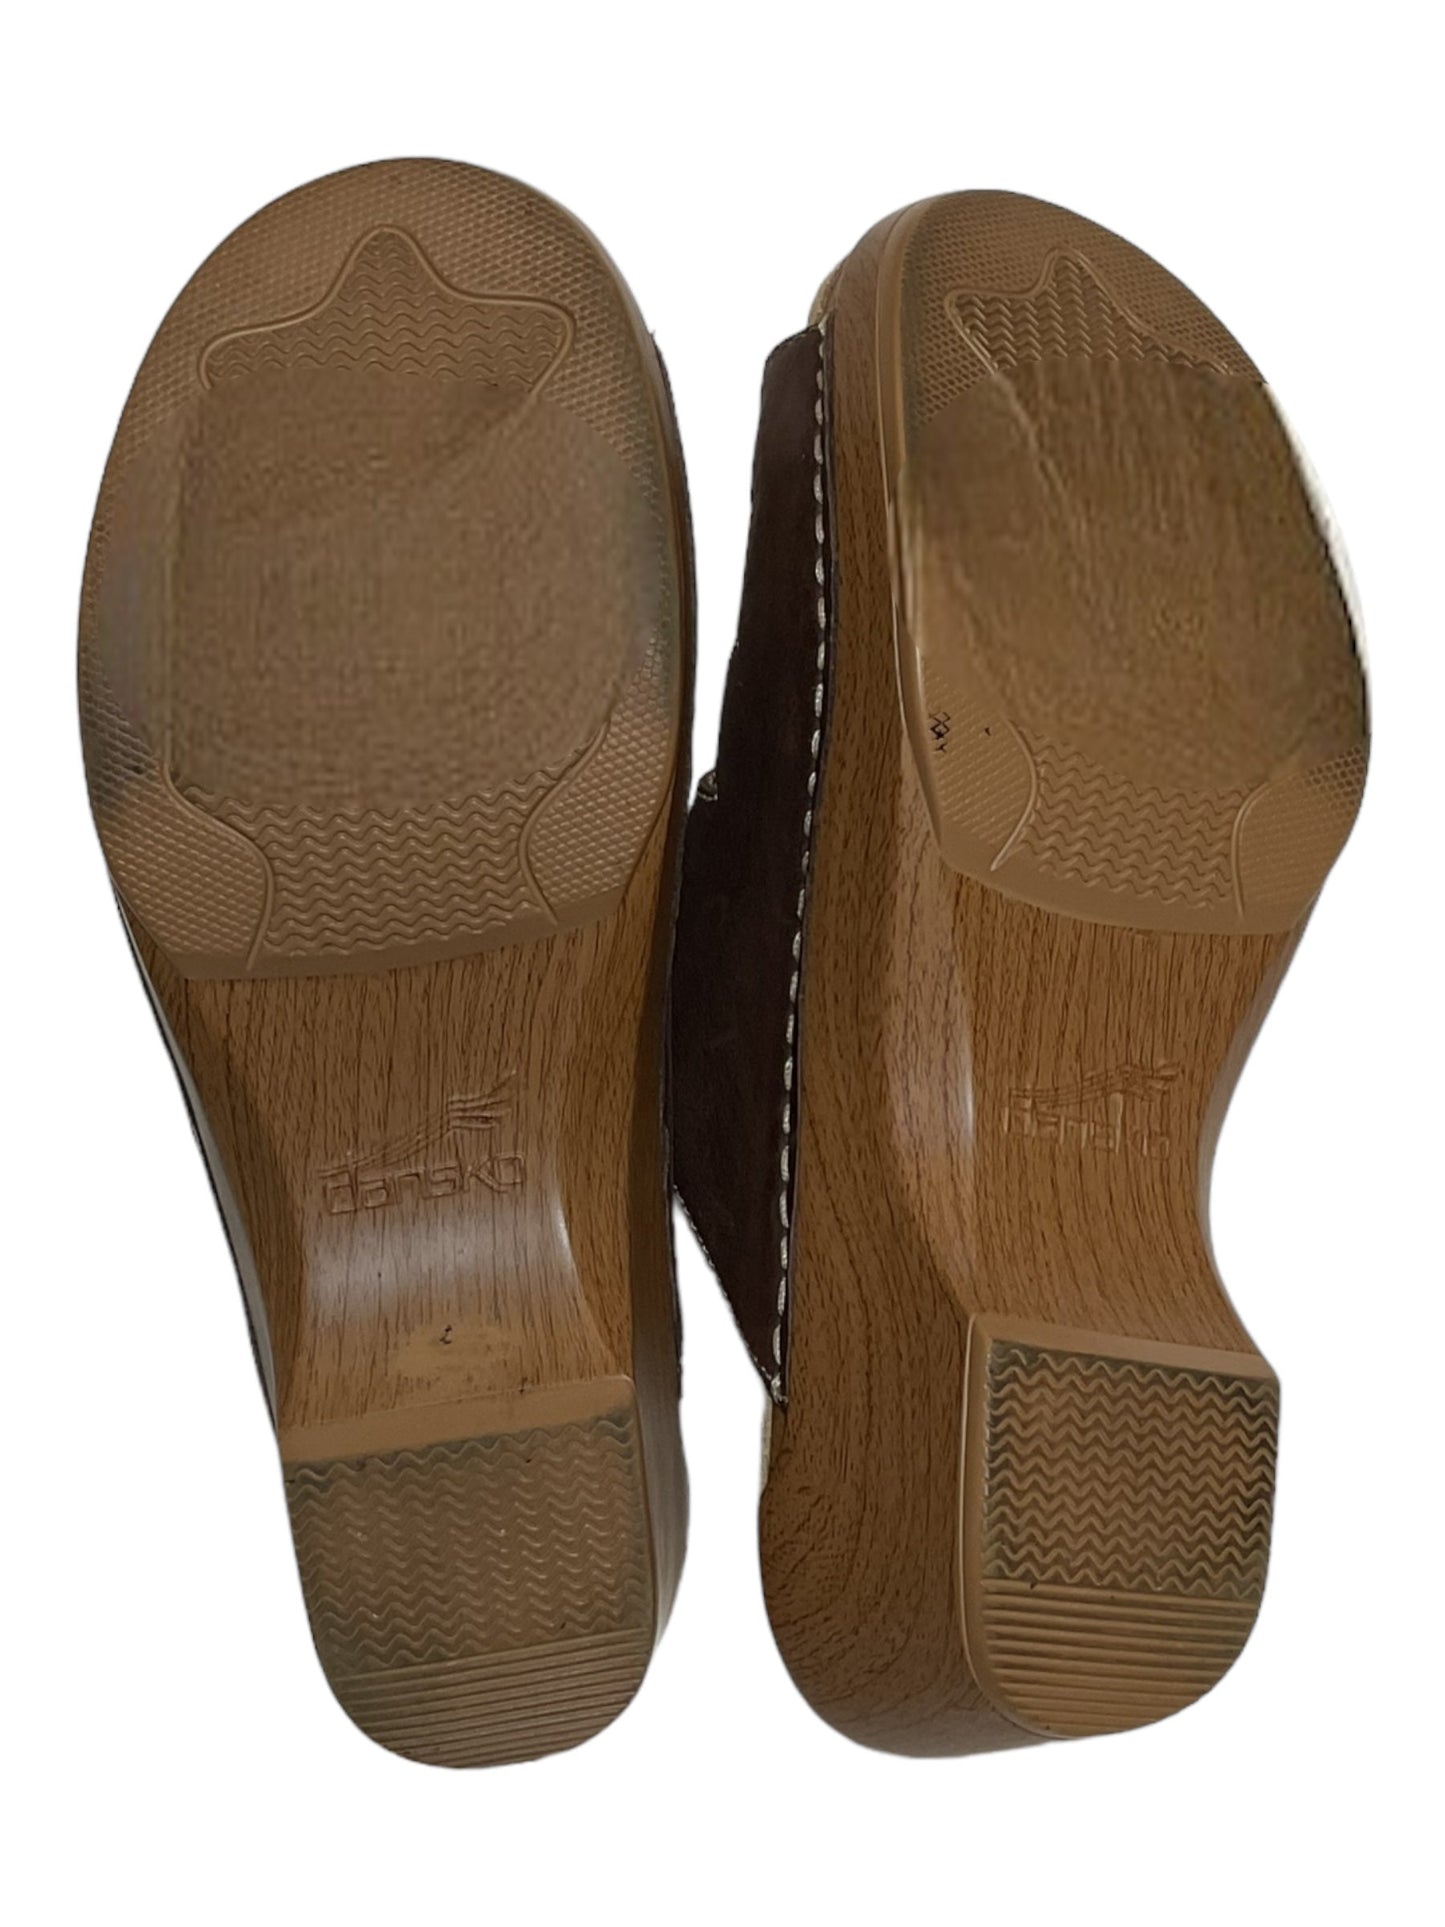 Brown Sandals Heels Block Dansko, Size 8.5